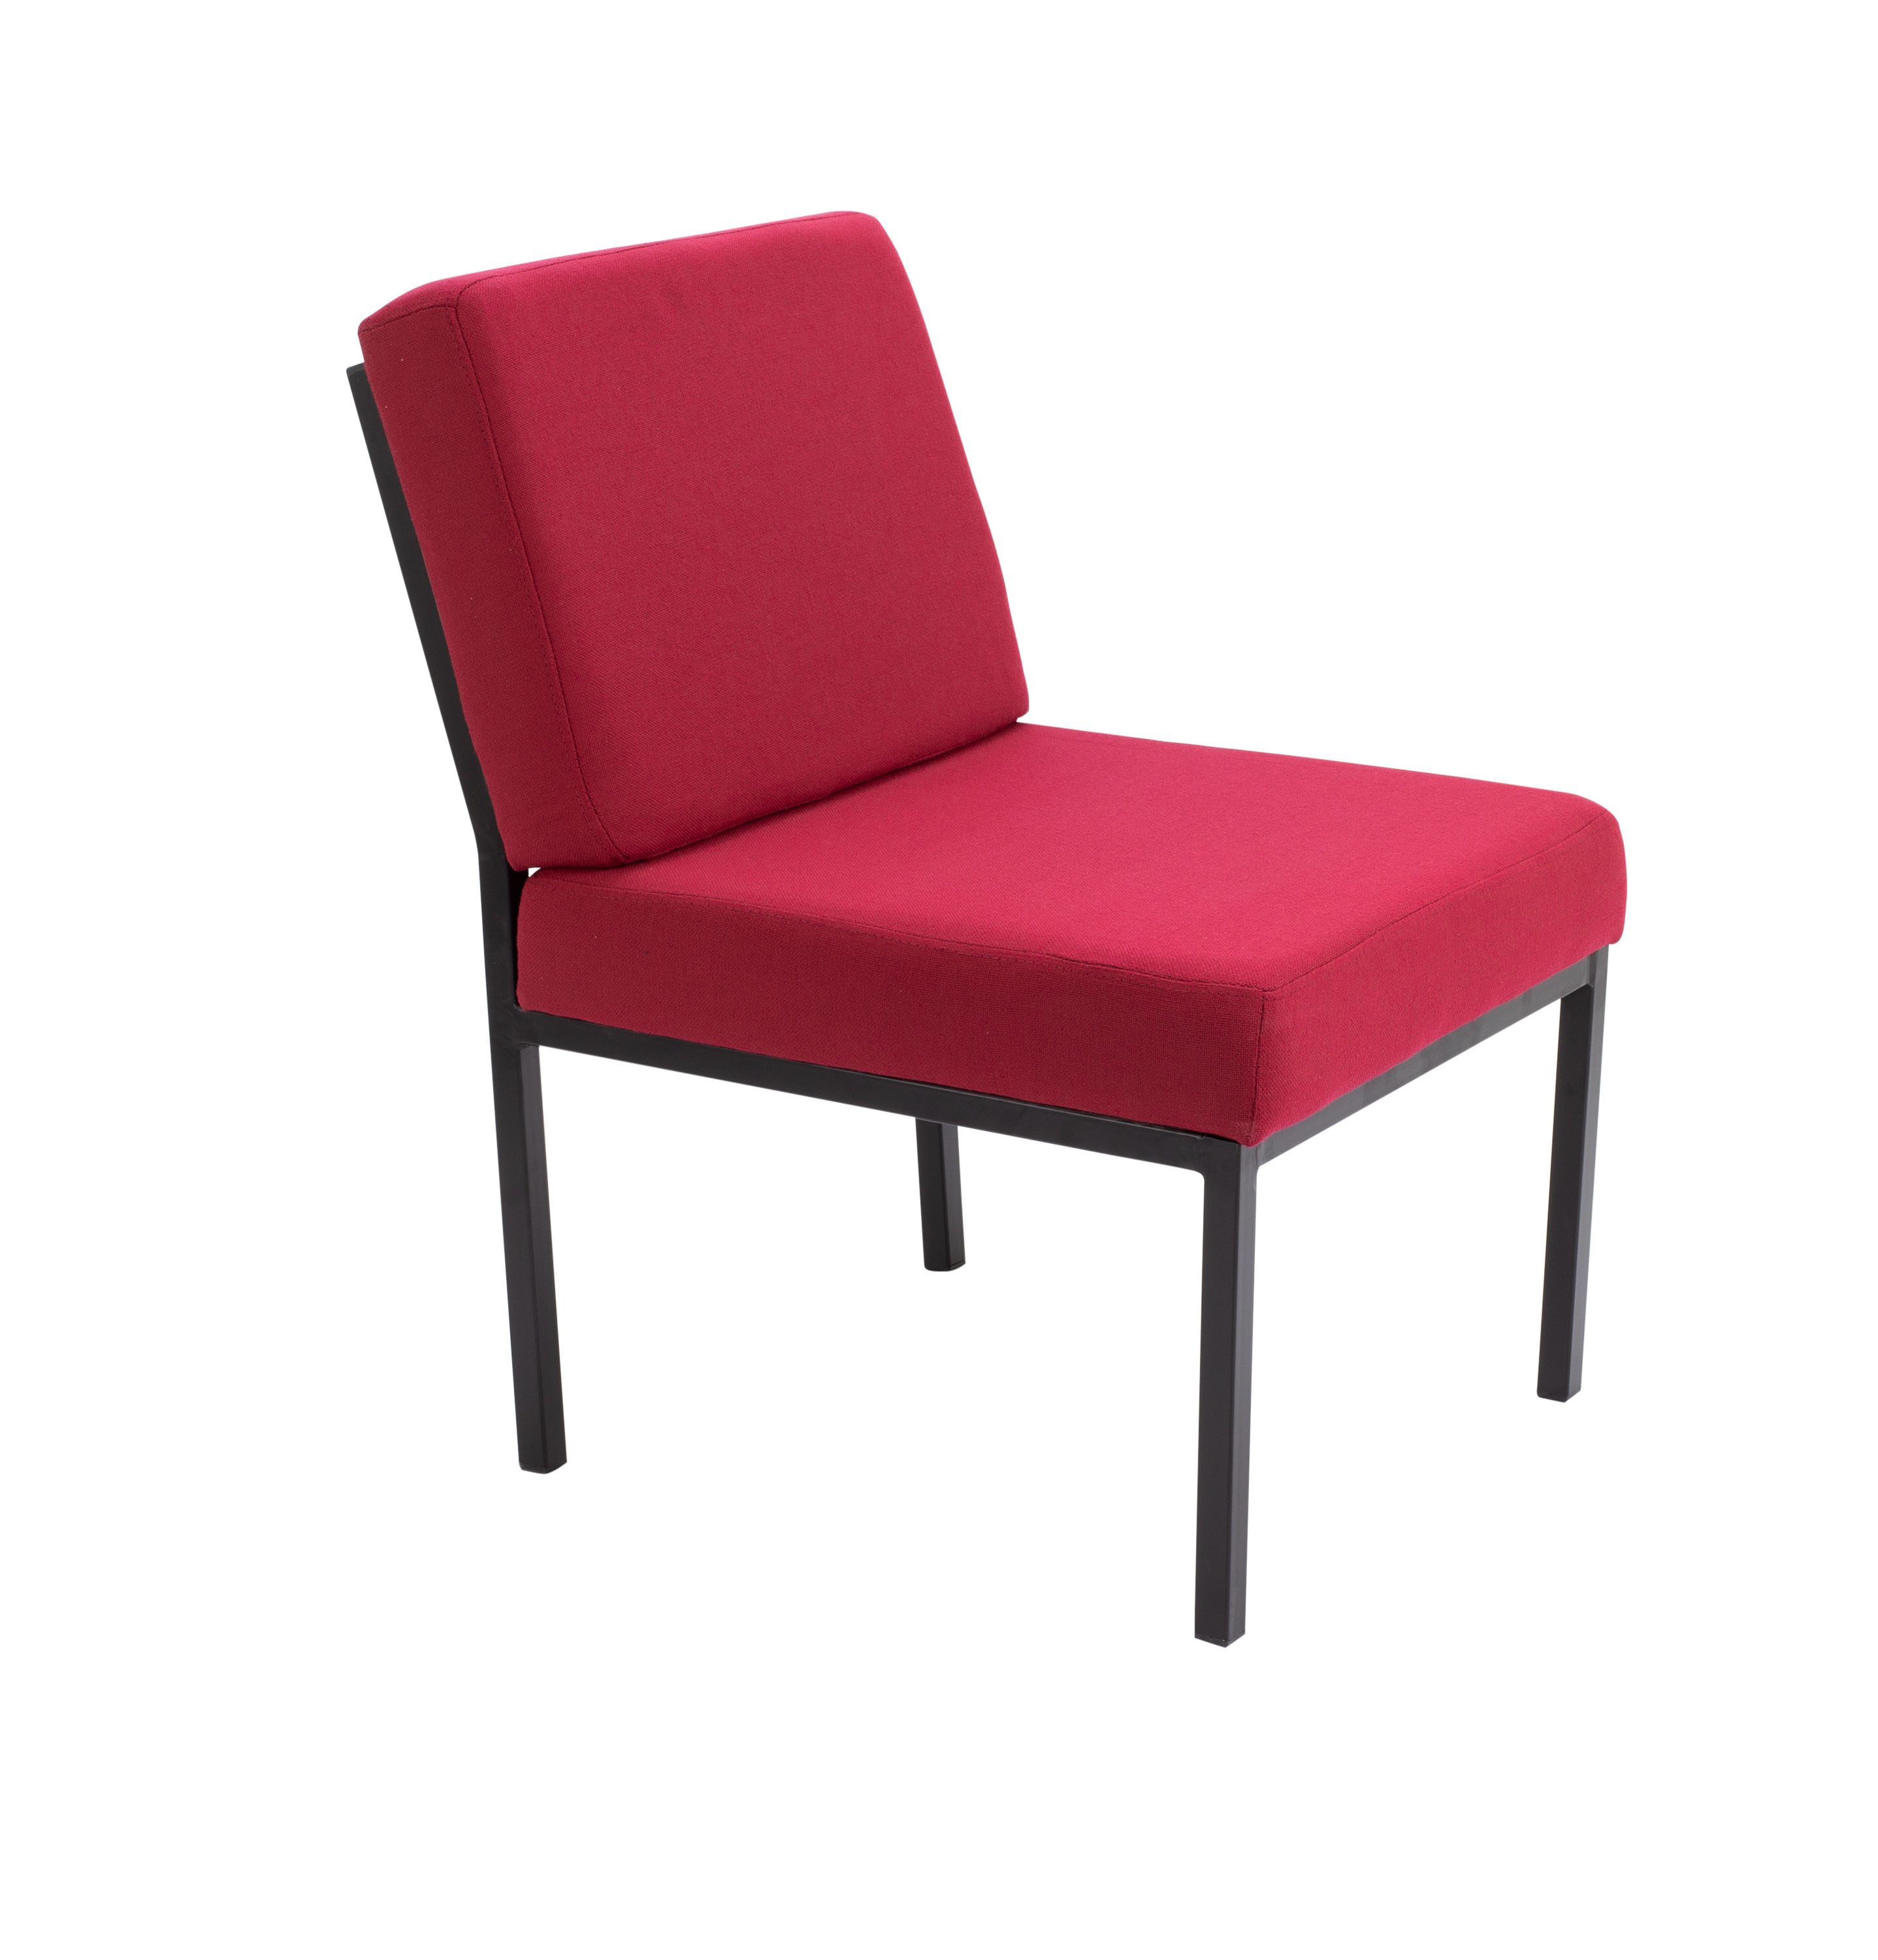 Rubic Chair - Claret